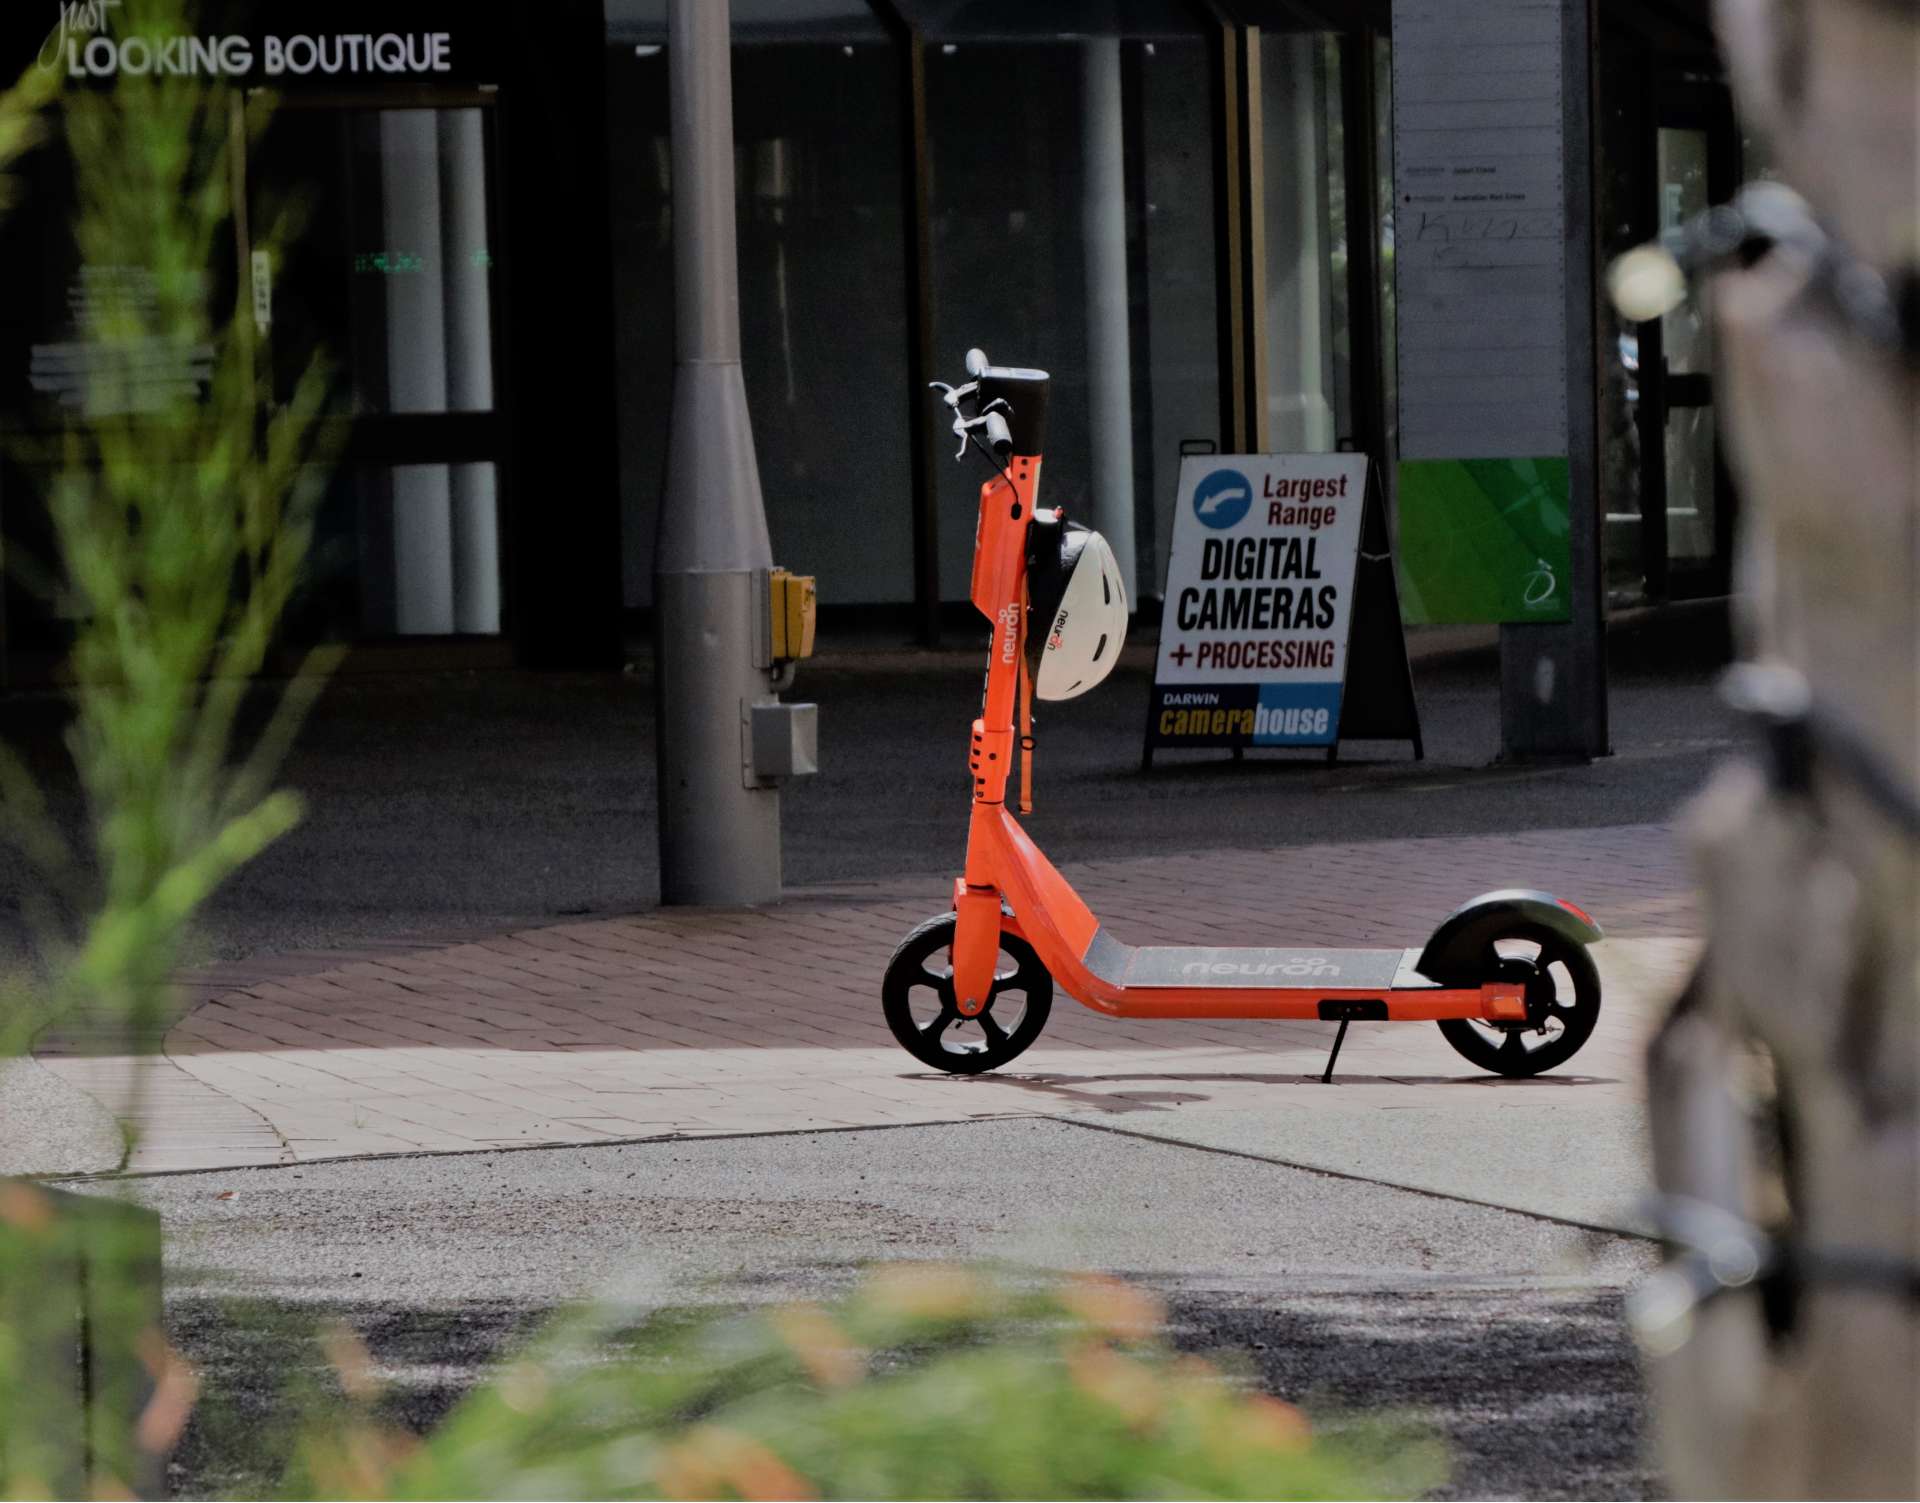 Vandret pære Gå til kredsløbet E-scooter trial starting soon on Melbourne and Ballarat's streets - ABC News